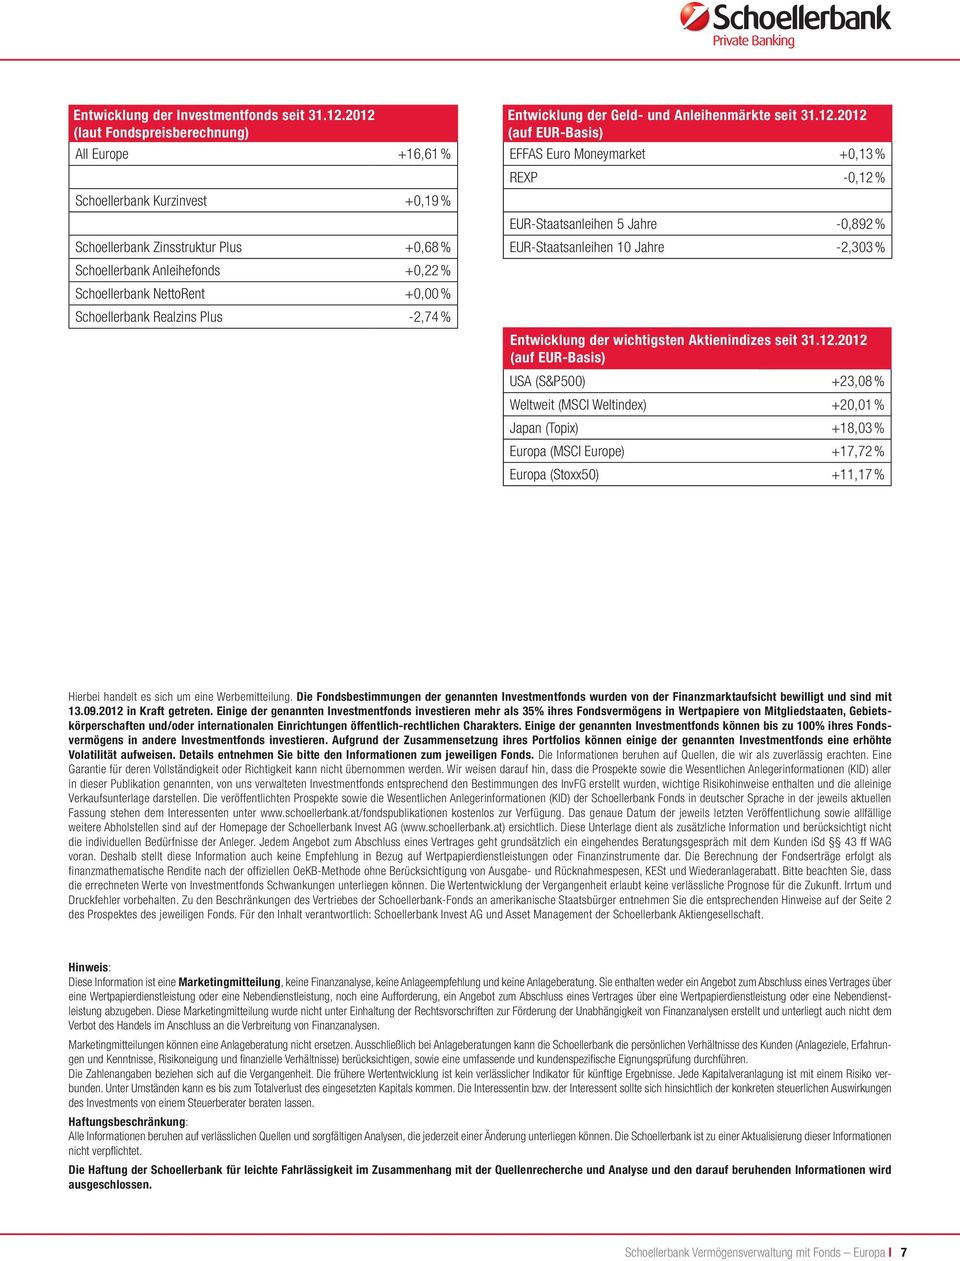 Schoellerbank Realzins Plus -2,74 % Entwicklung der Geld- und märkte seit 31.12.